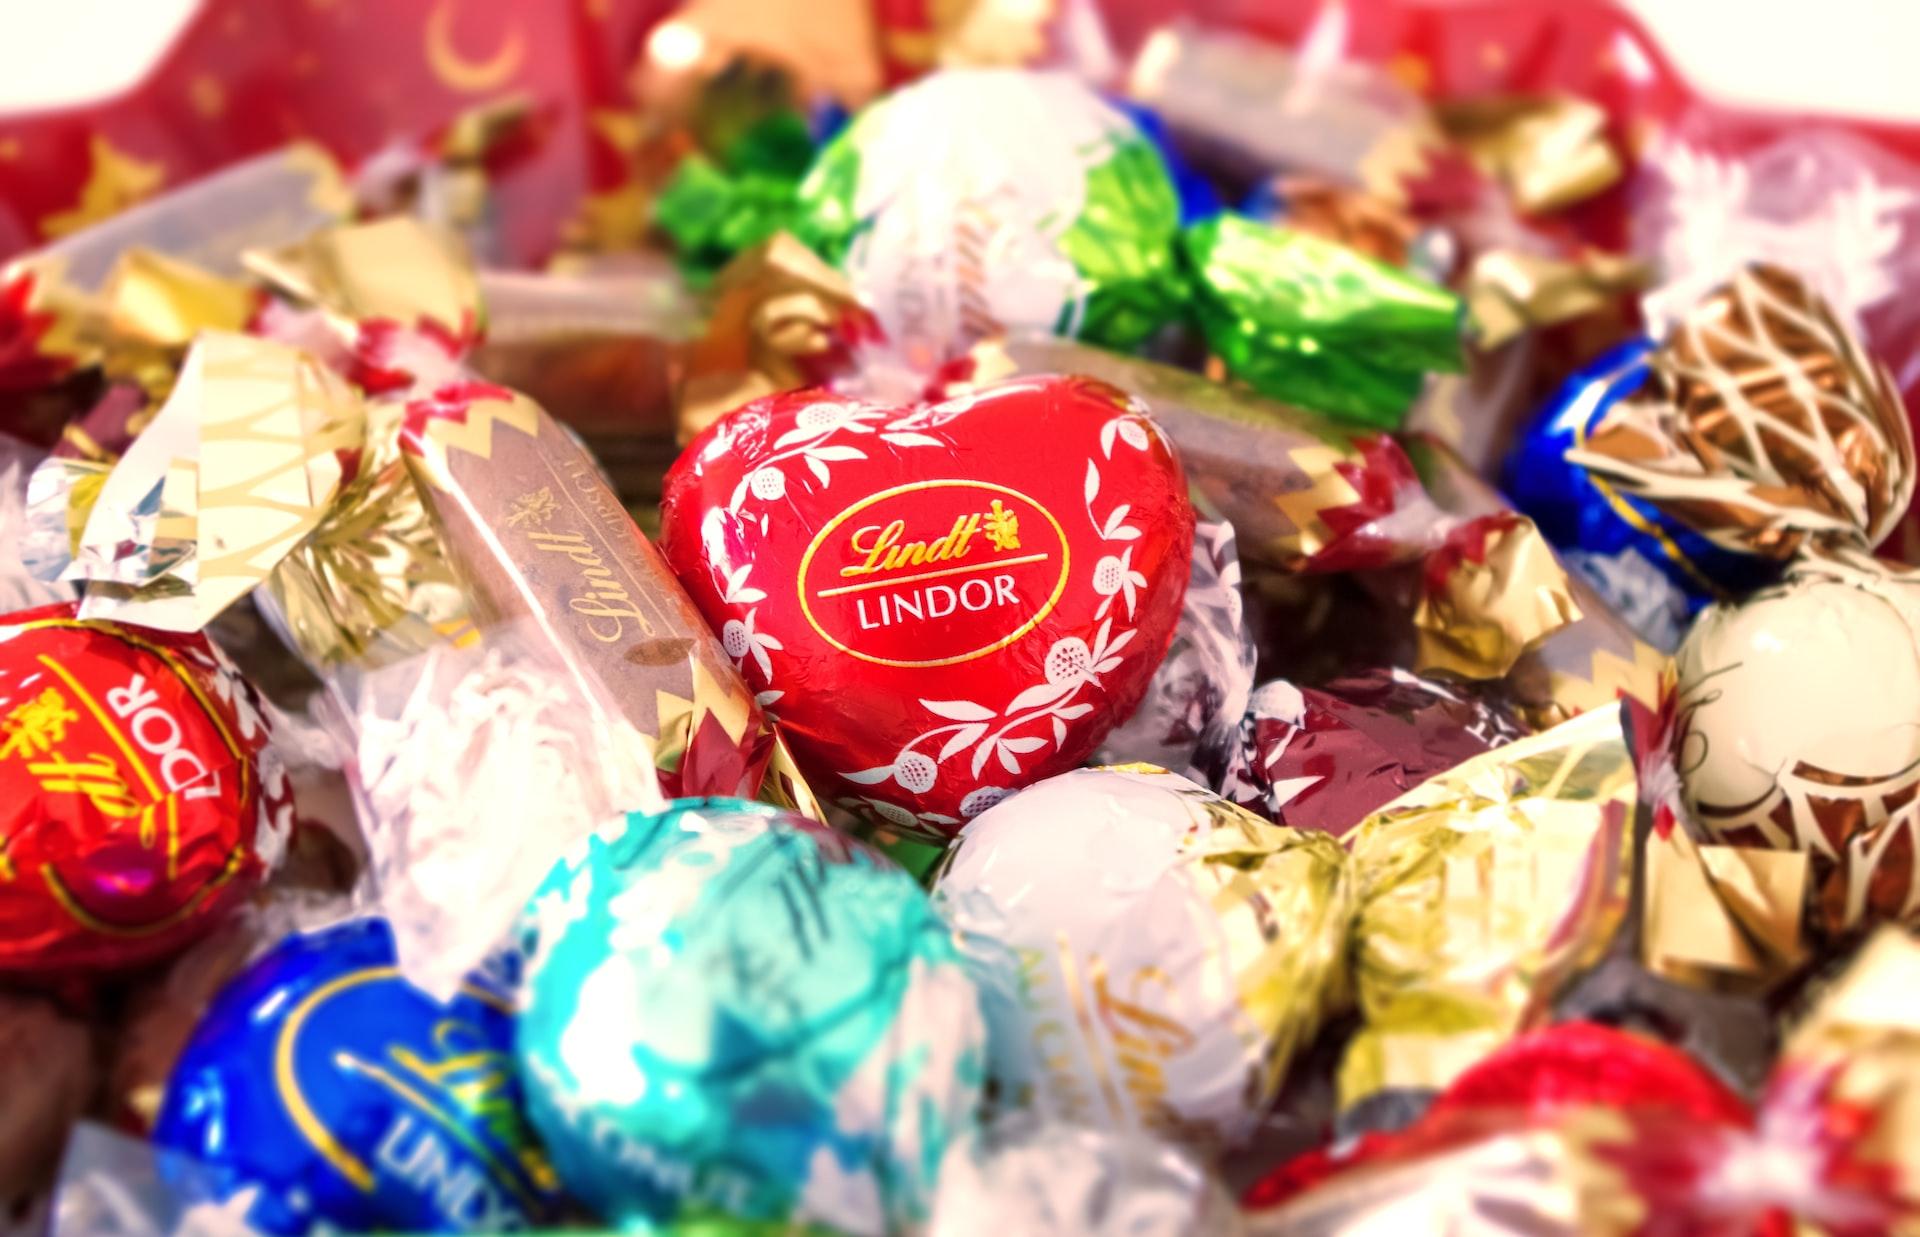 Шоколадные конфеты и еще два десятка продуктов подорожали в Тверской области перед Новым годом  - новости Афанасий